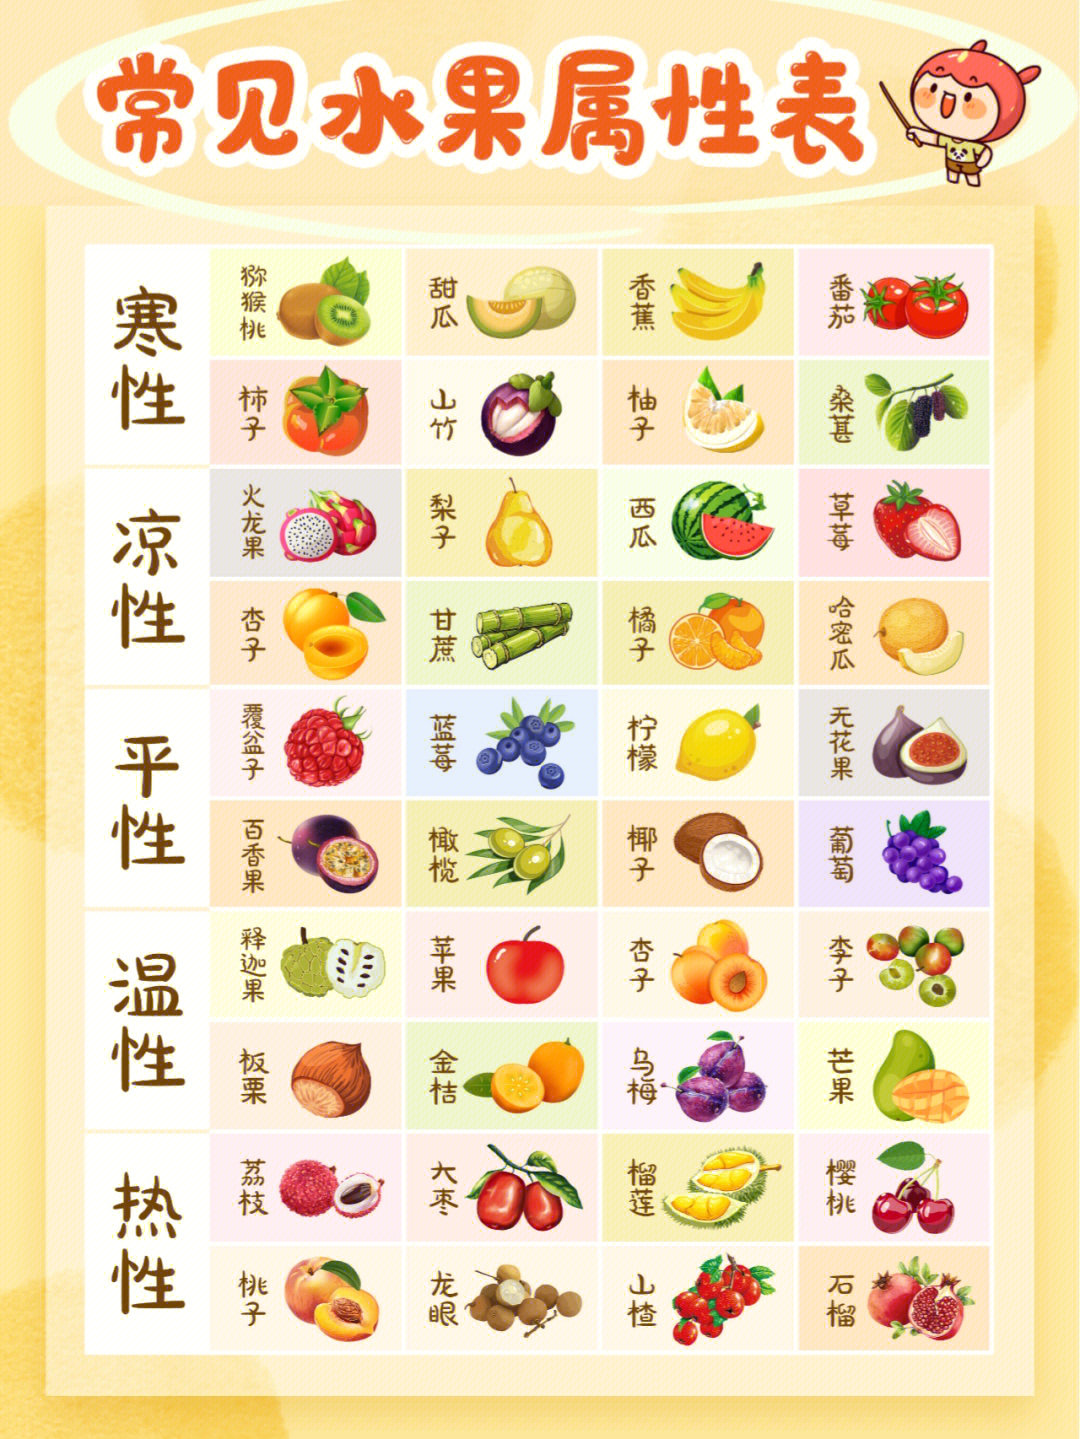 中医把水果分为了五大属性:热性,温性,平性,凉性,寒性